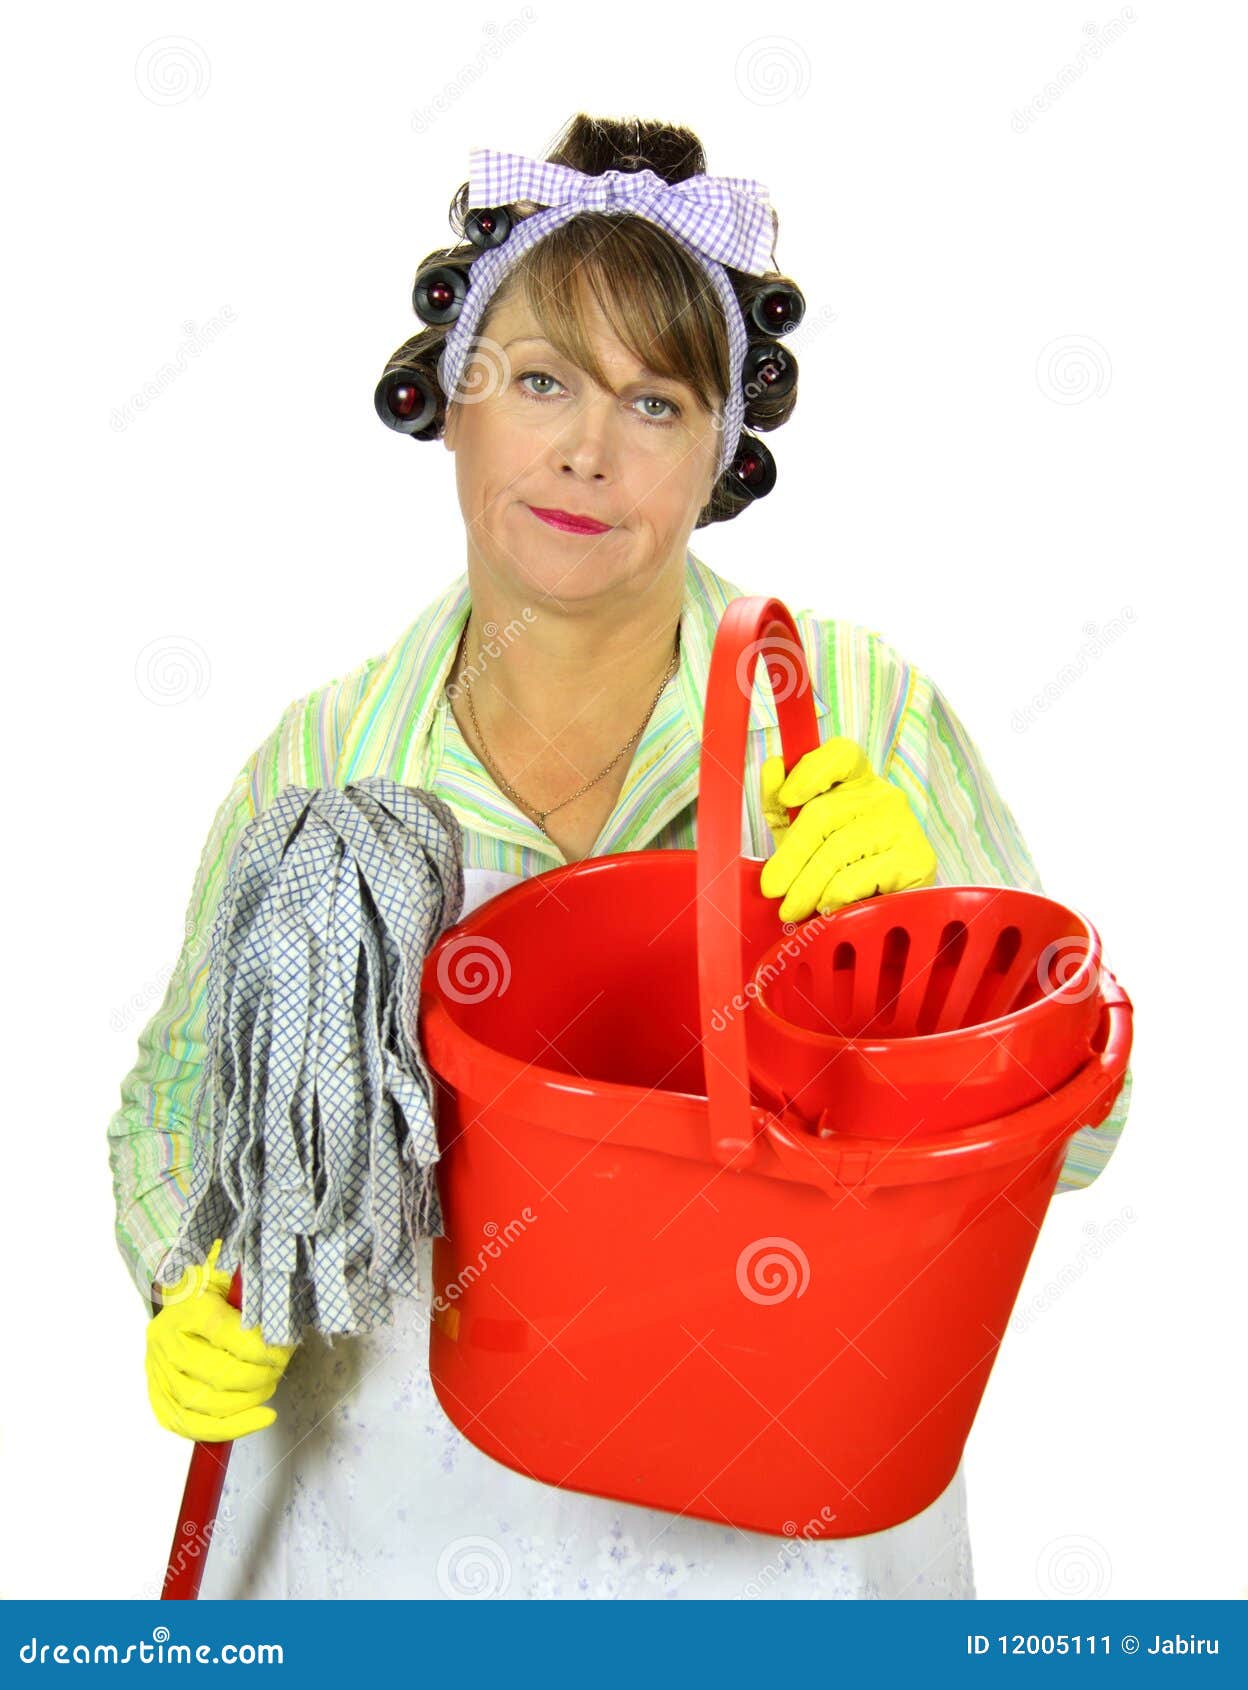 Mop and Bucket Housewife stock image. Image of bucket - 12005111